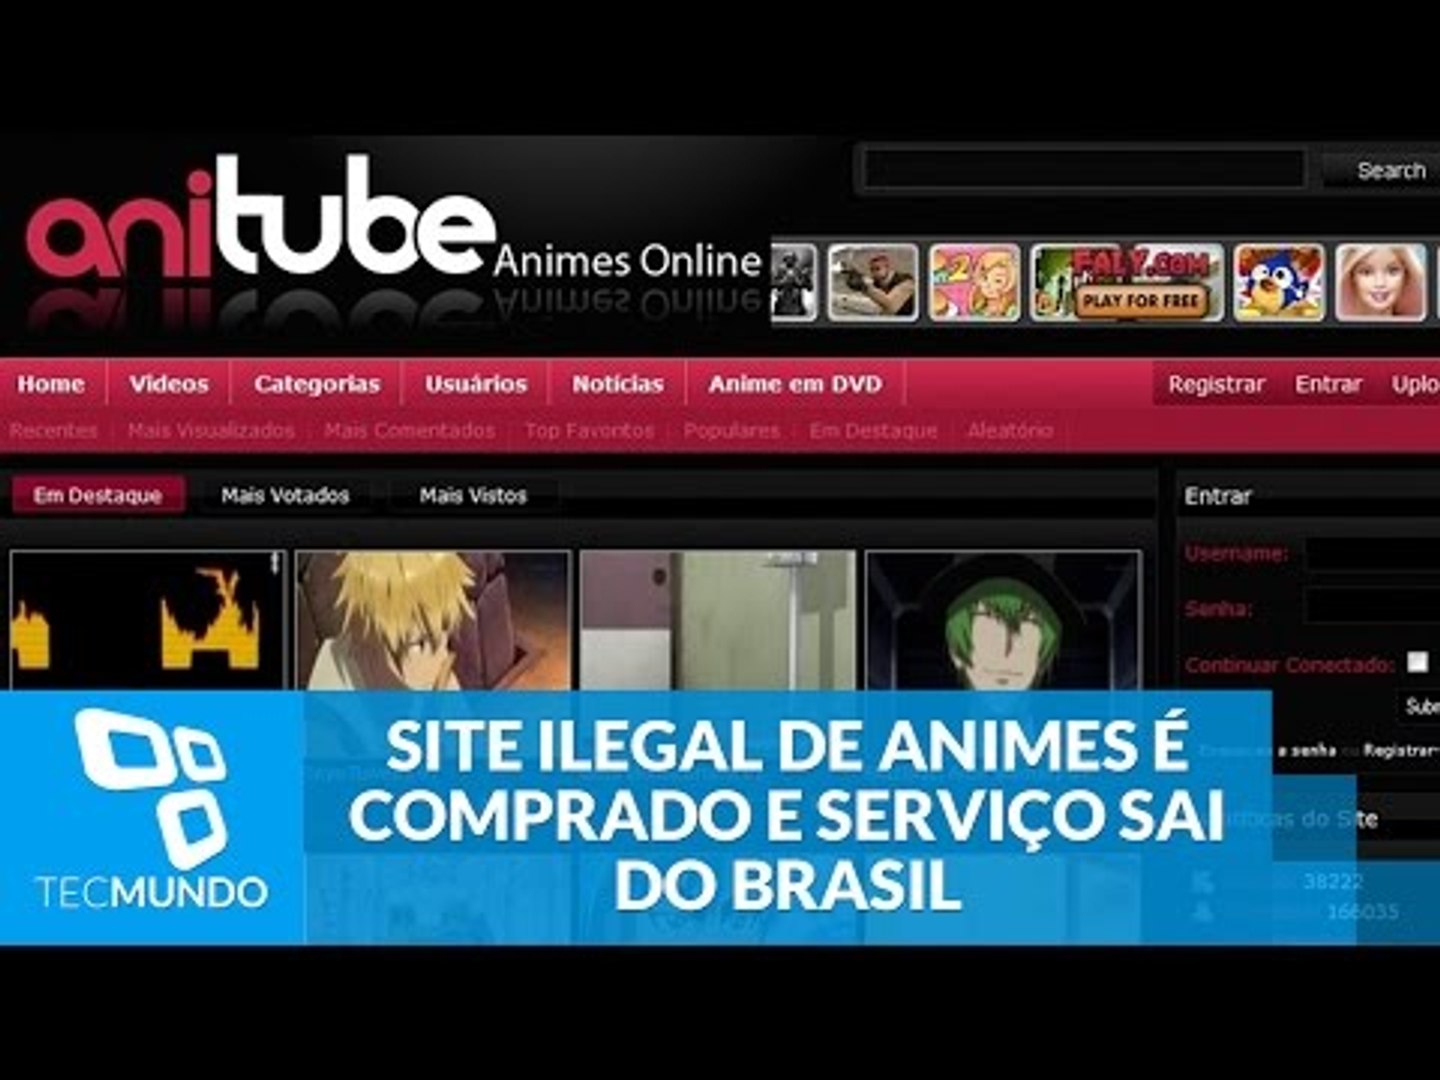 Categorias - Animes Online